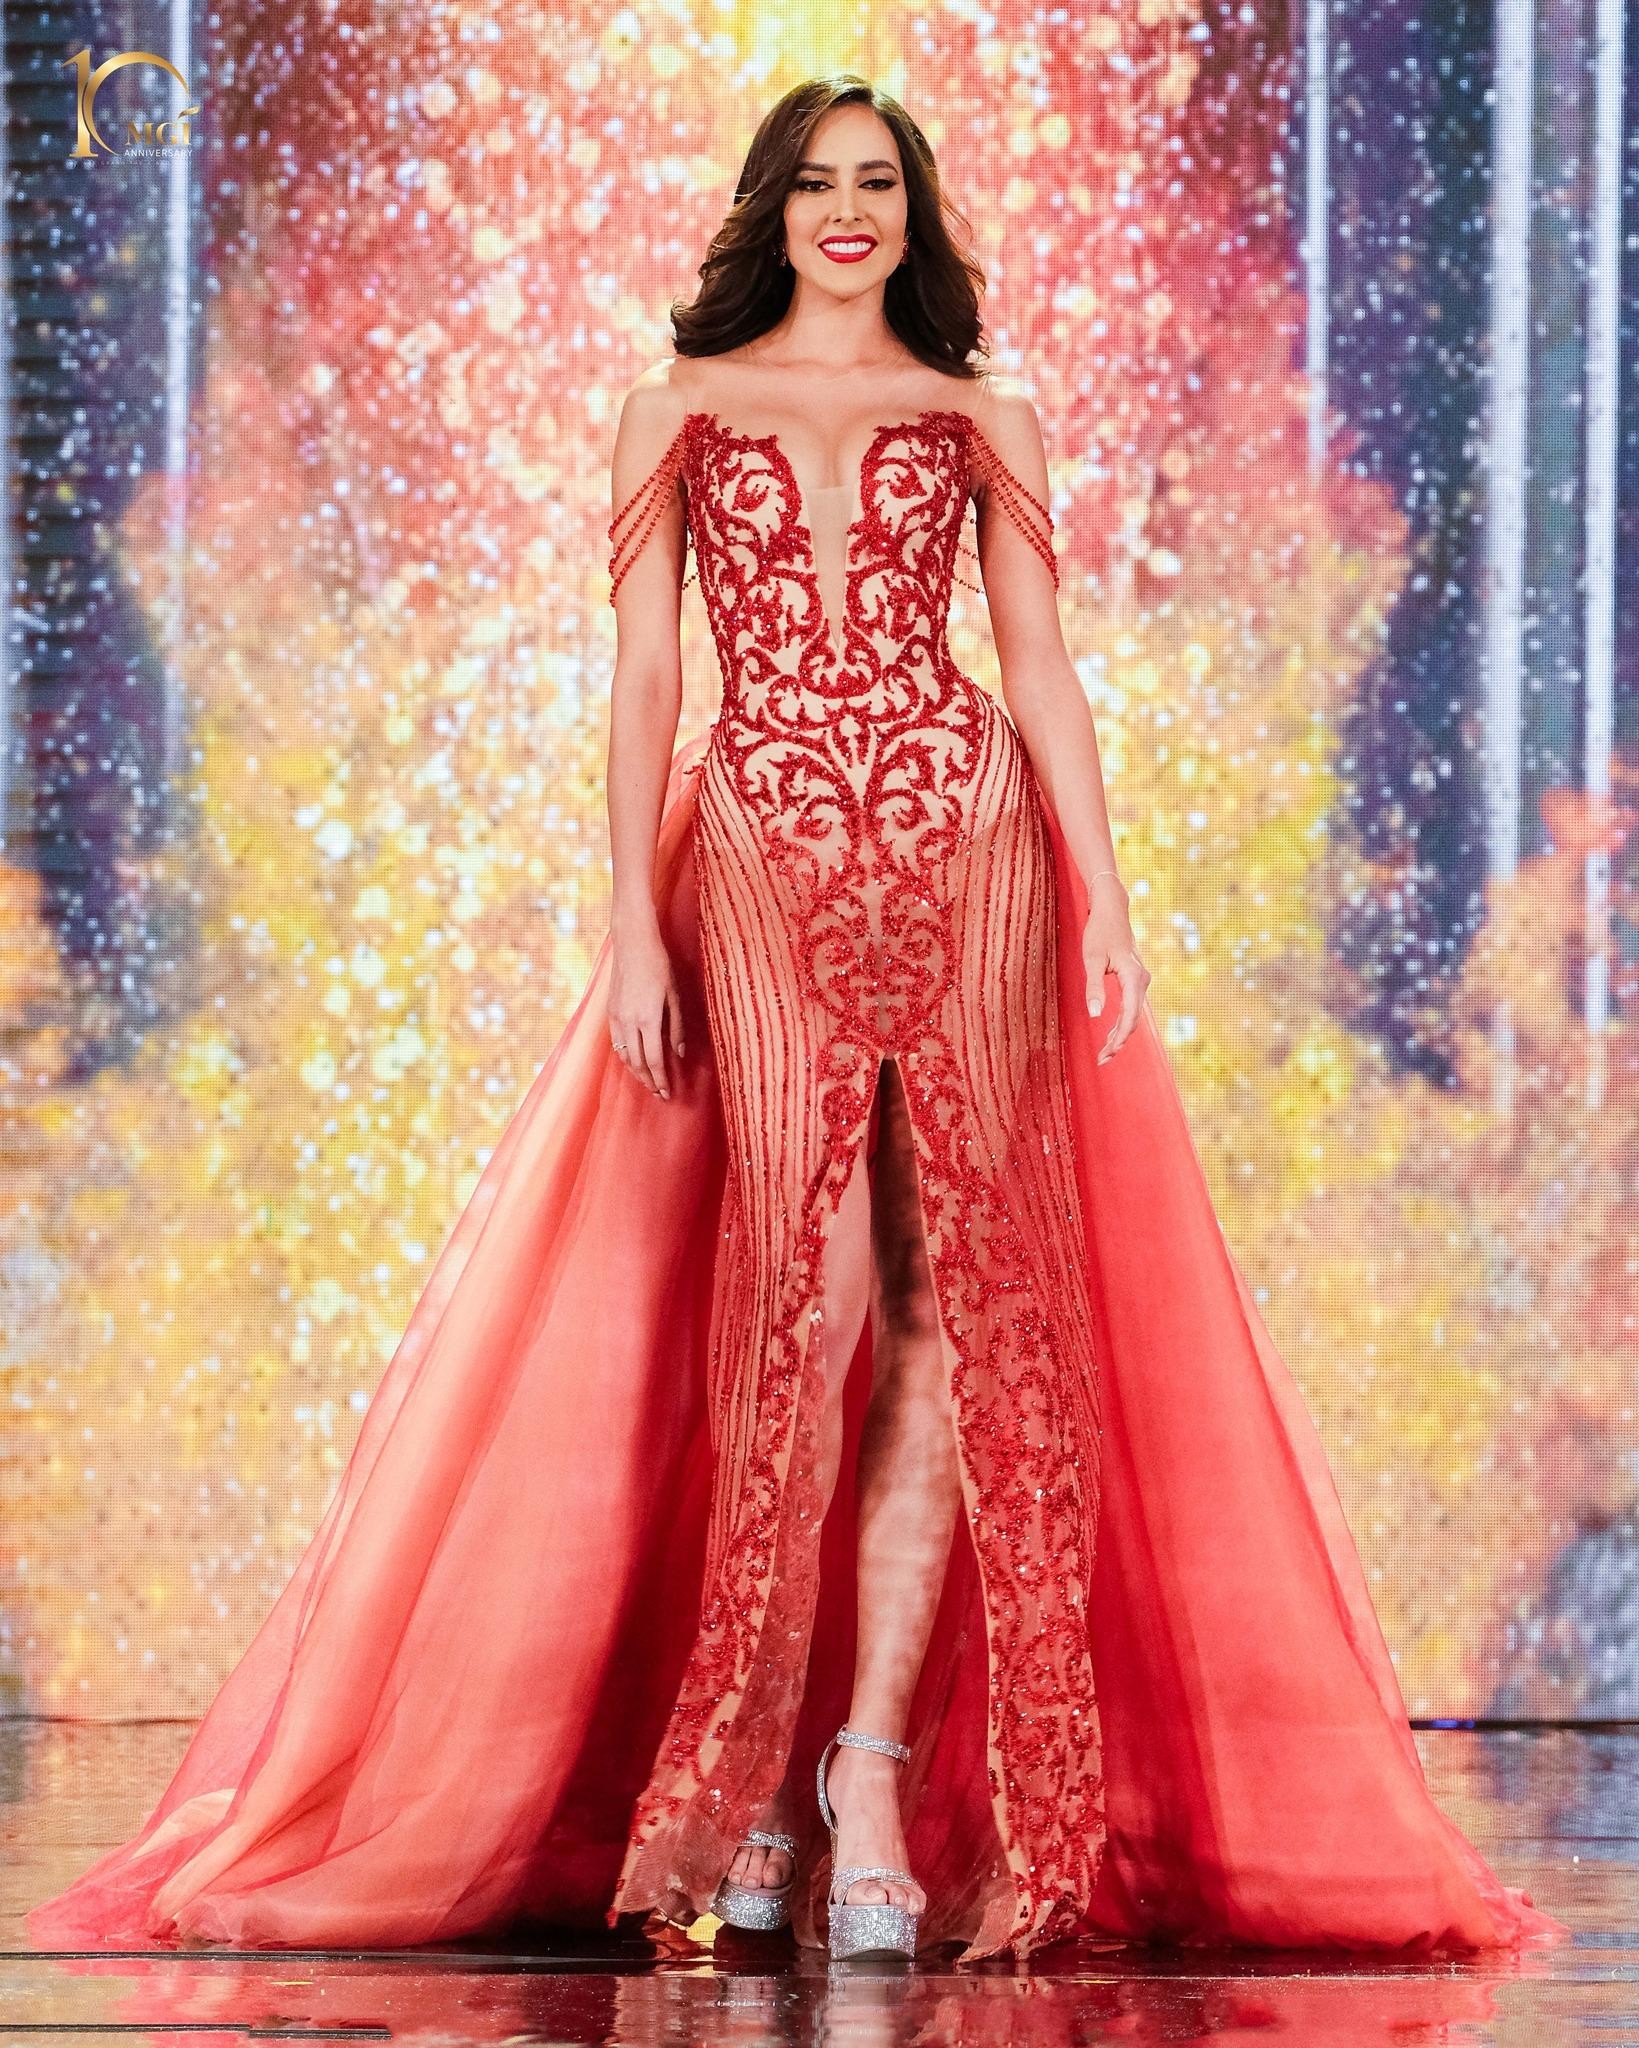 Váy dạ hội gợi cảm ở bán kết Hoa hậu Hòa bình - Ảnh 3.